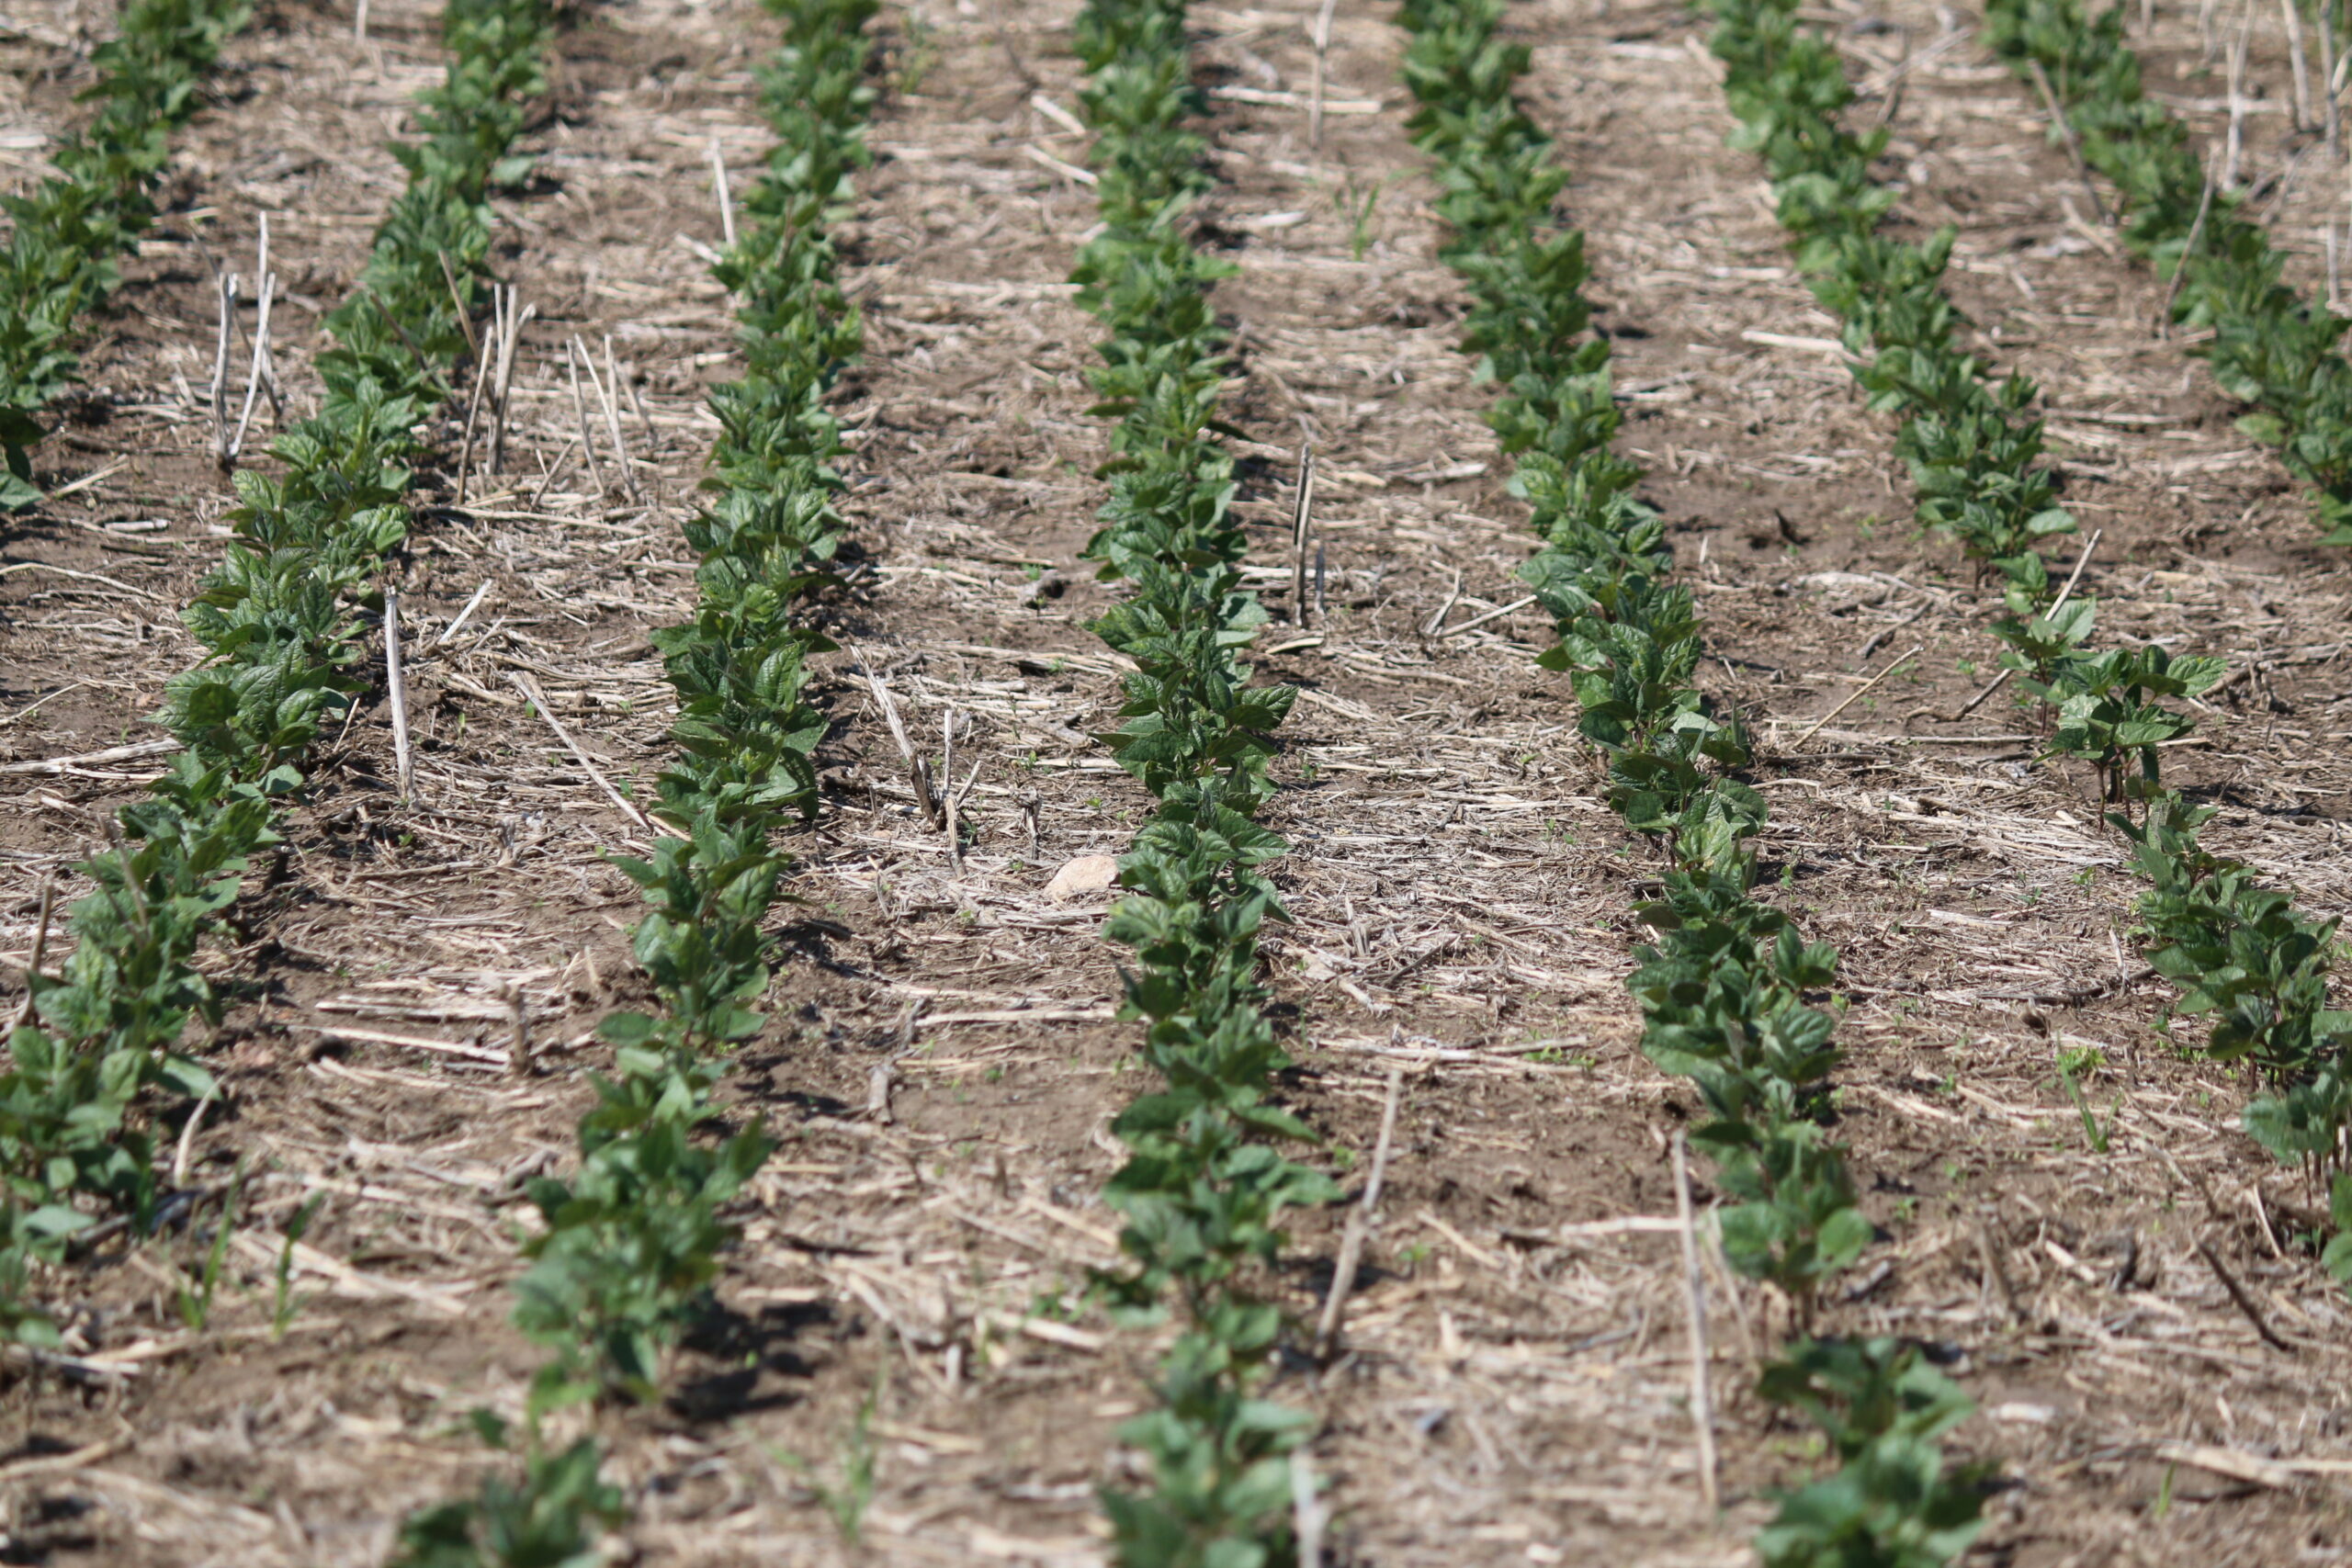 Rows of CDC Blackstrap bean seedlings